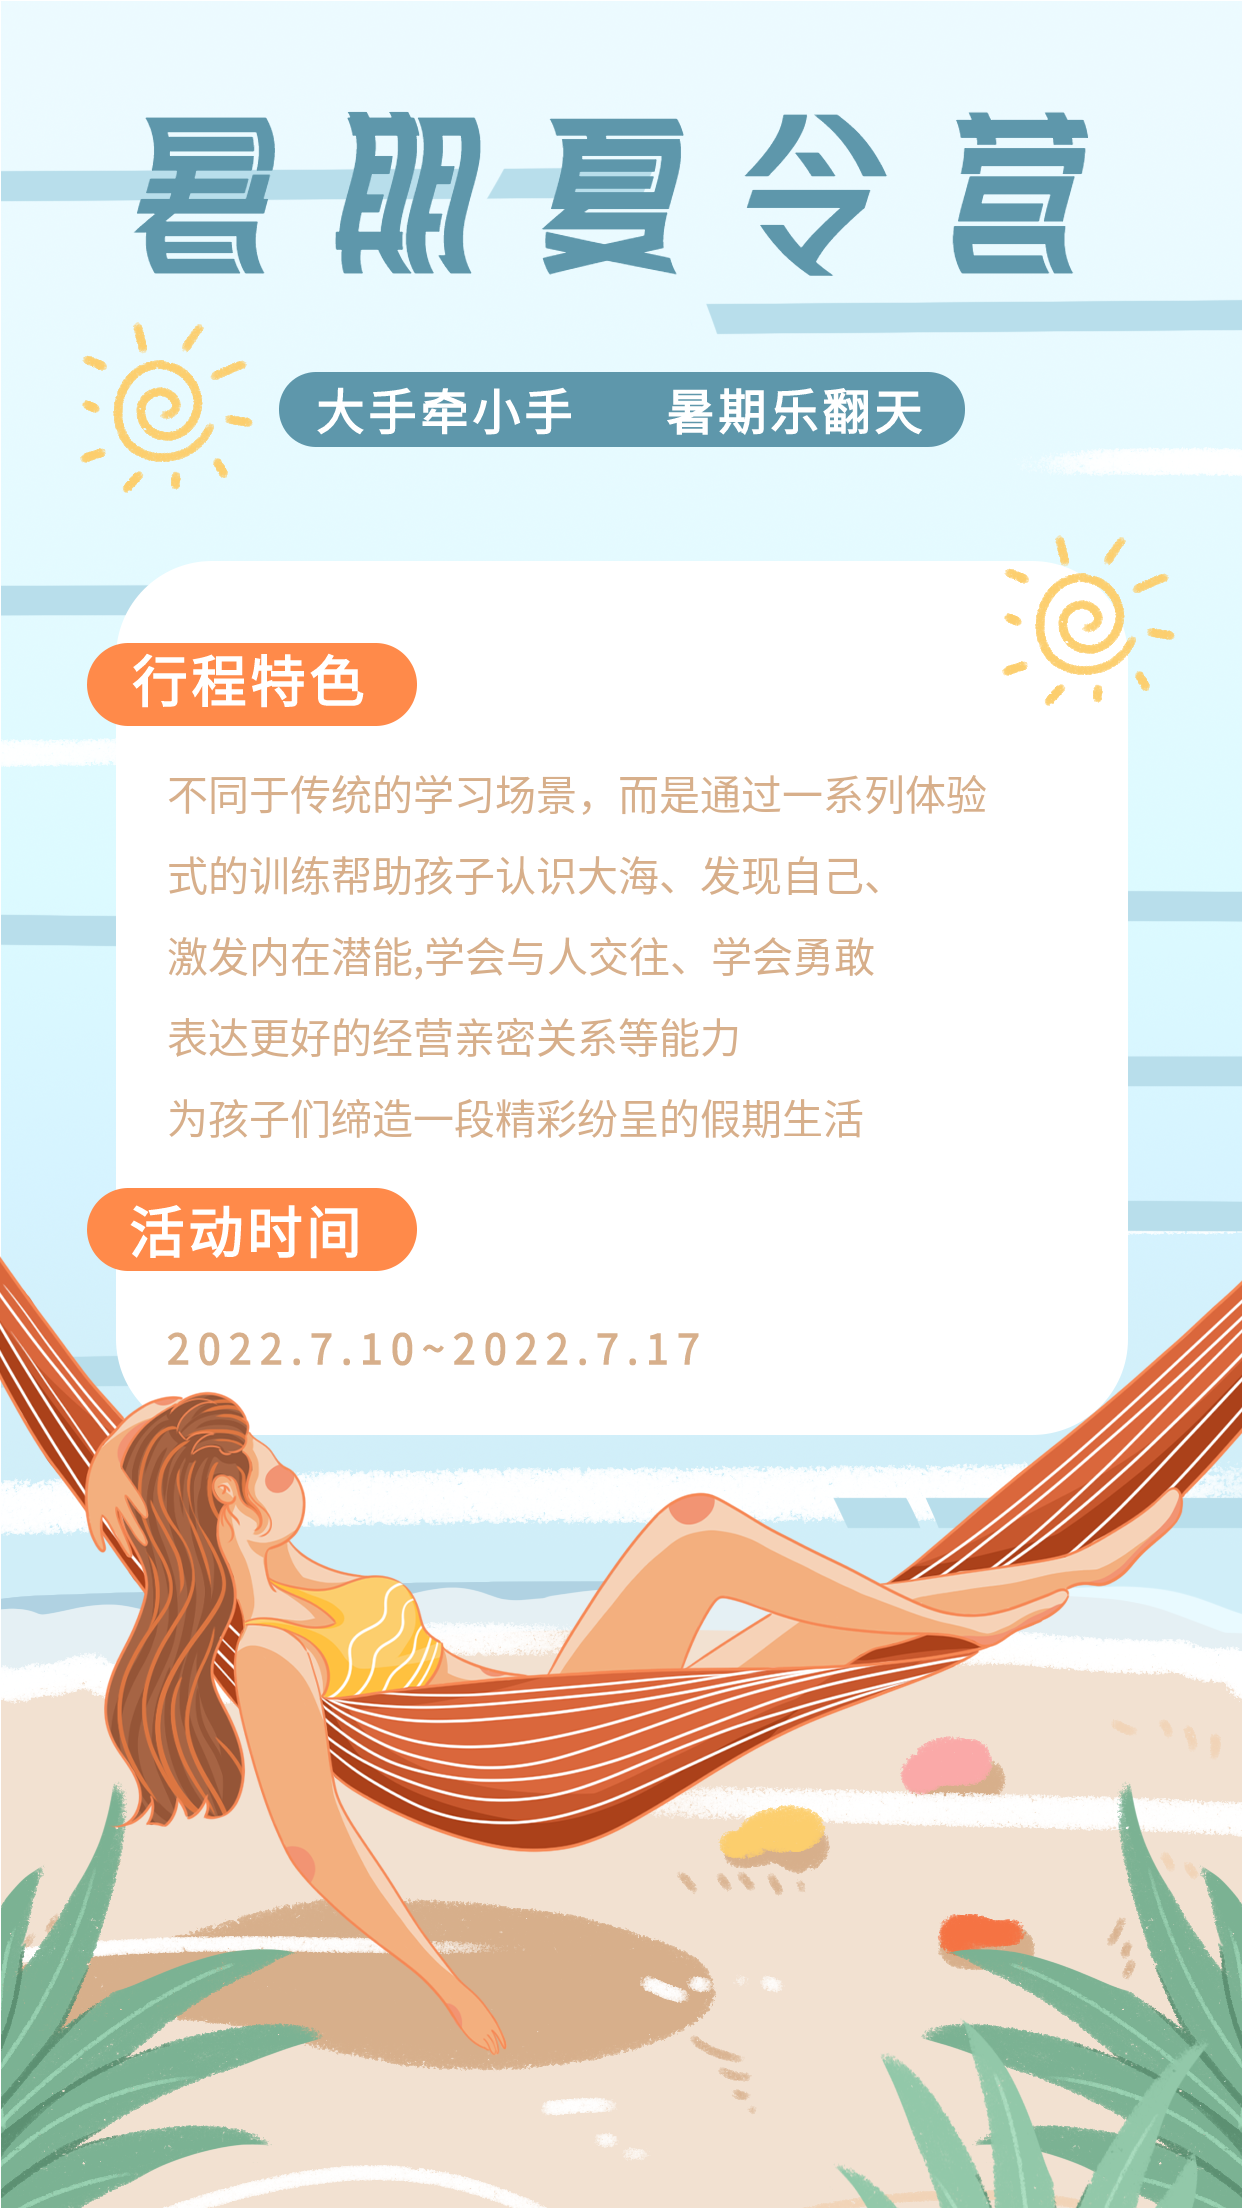 暑期夏令营行程安排暑假活动海报